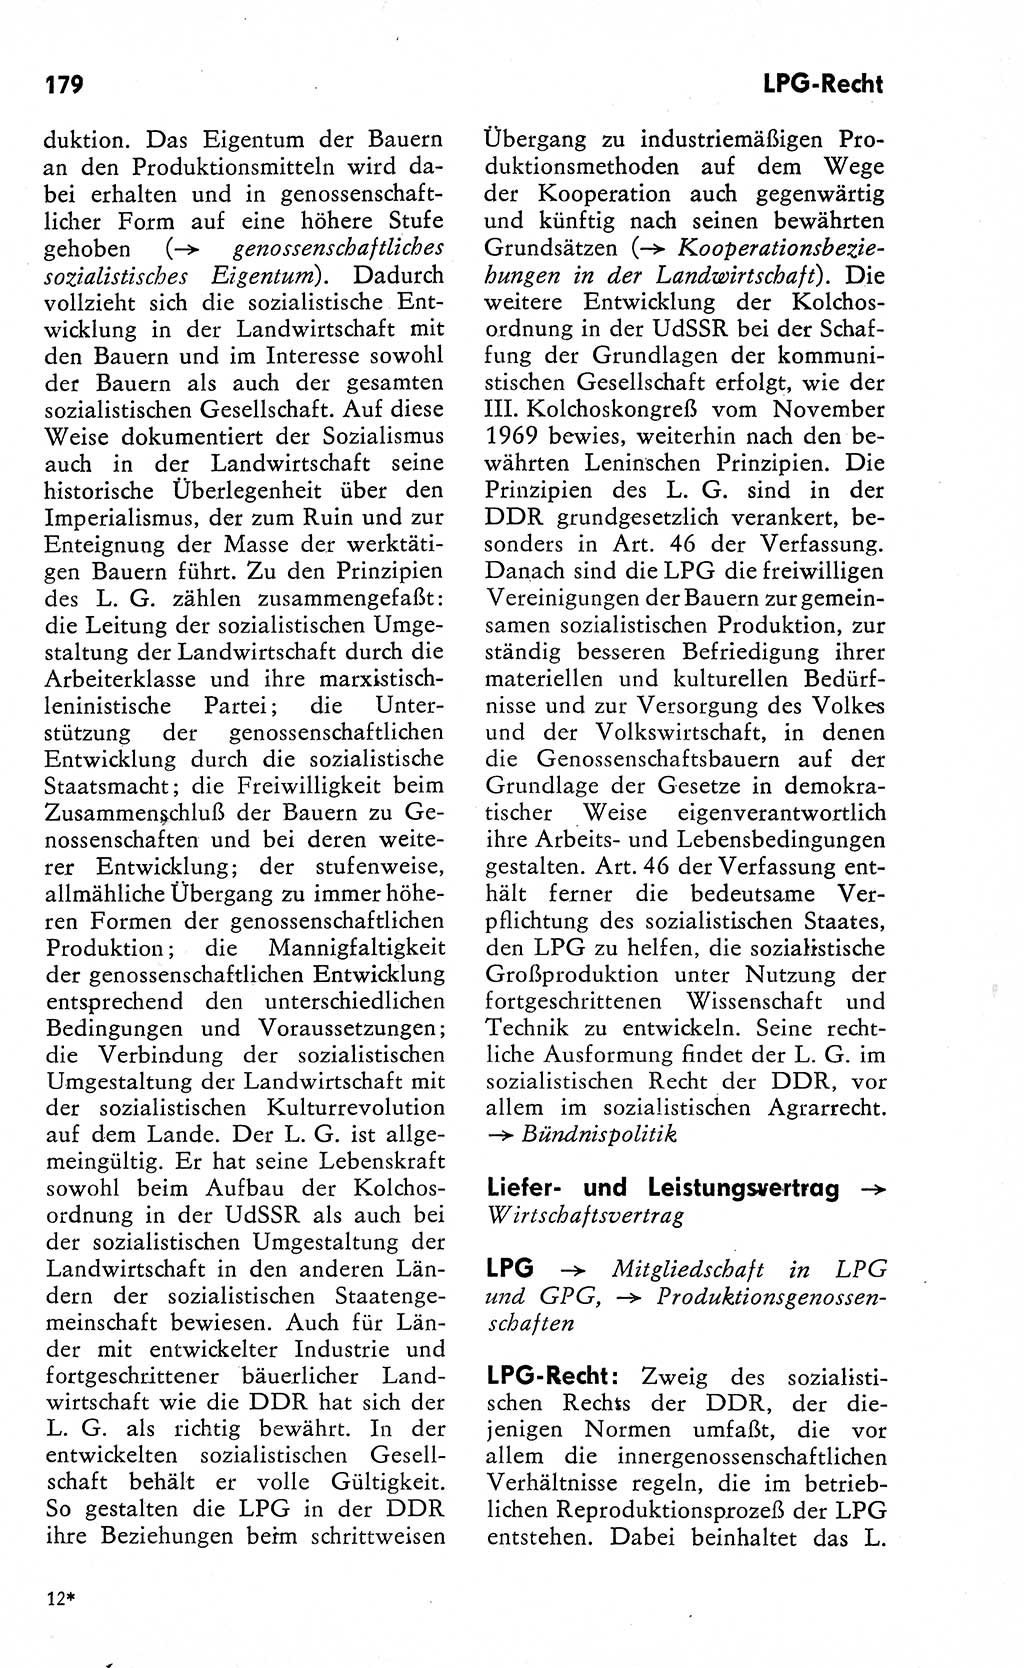 Wörterbuch zum sozialistischen Staat [Deutsche Demokratische Republik (DDR)] 1974, Seite 179 (Wb. soz. St. DDR 1974, S. 179)